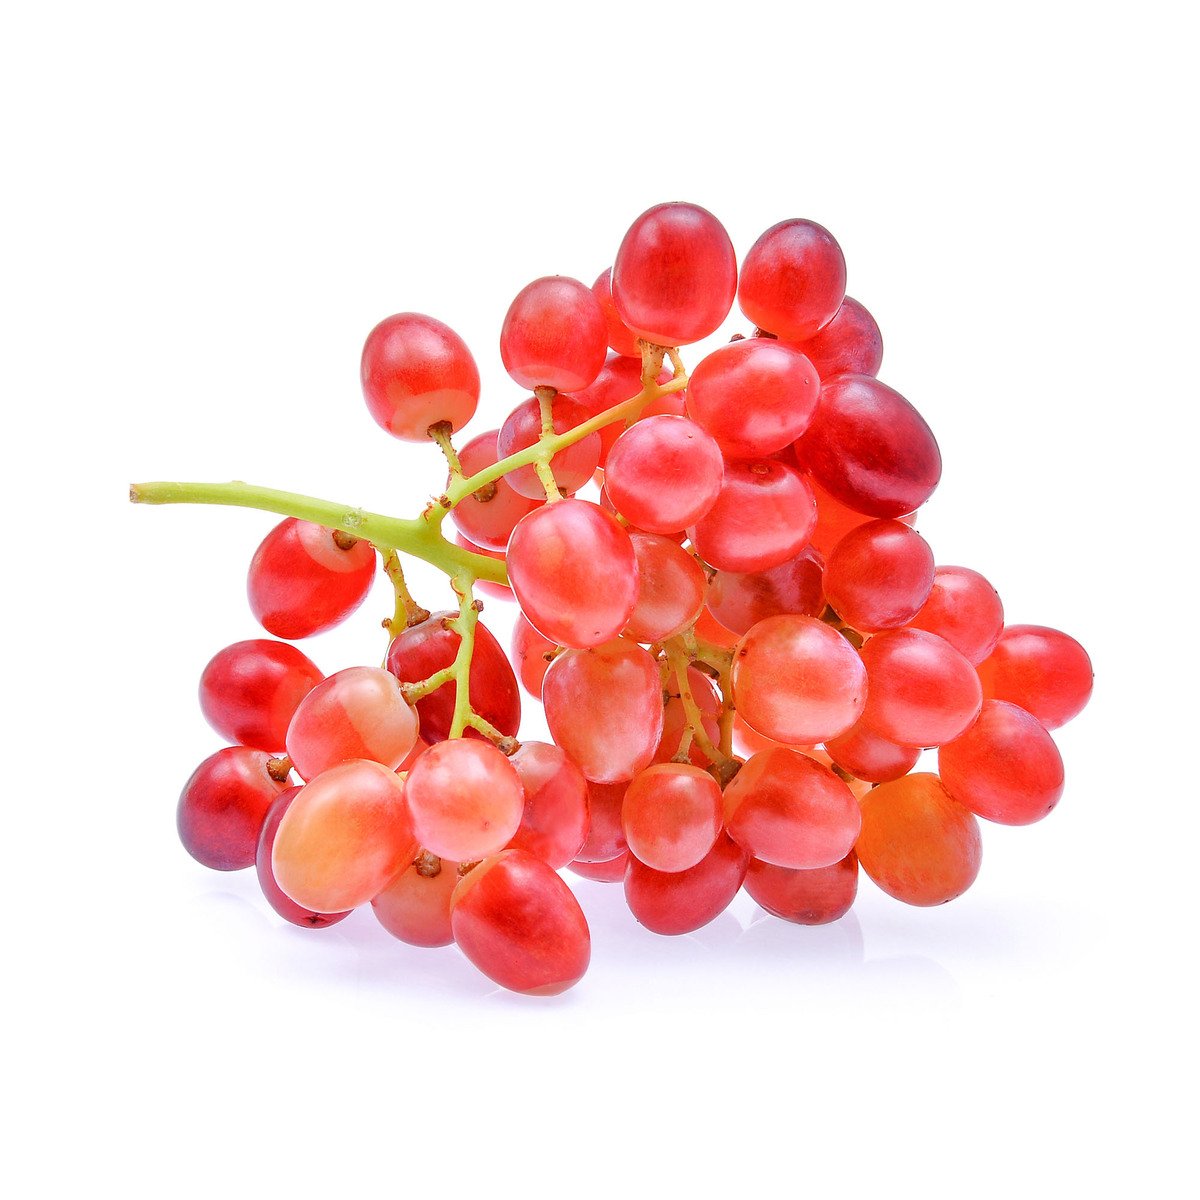 Grapes Red Crimson Australia 500 g